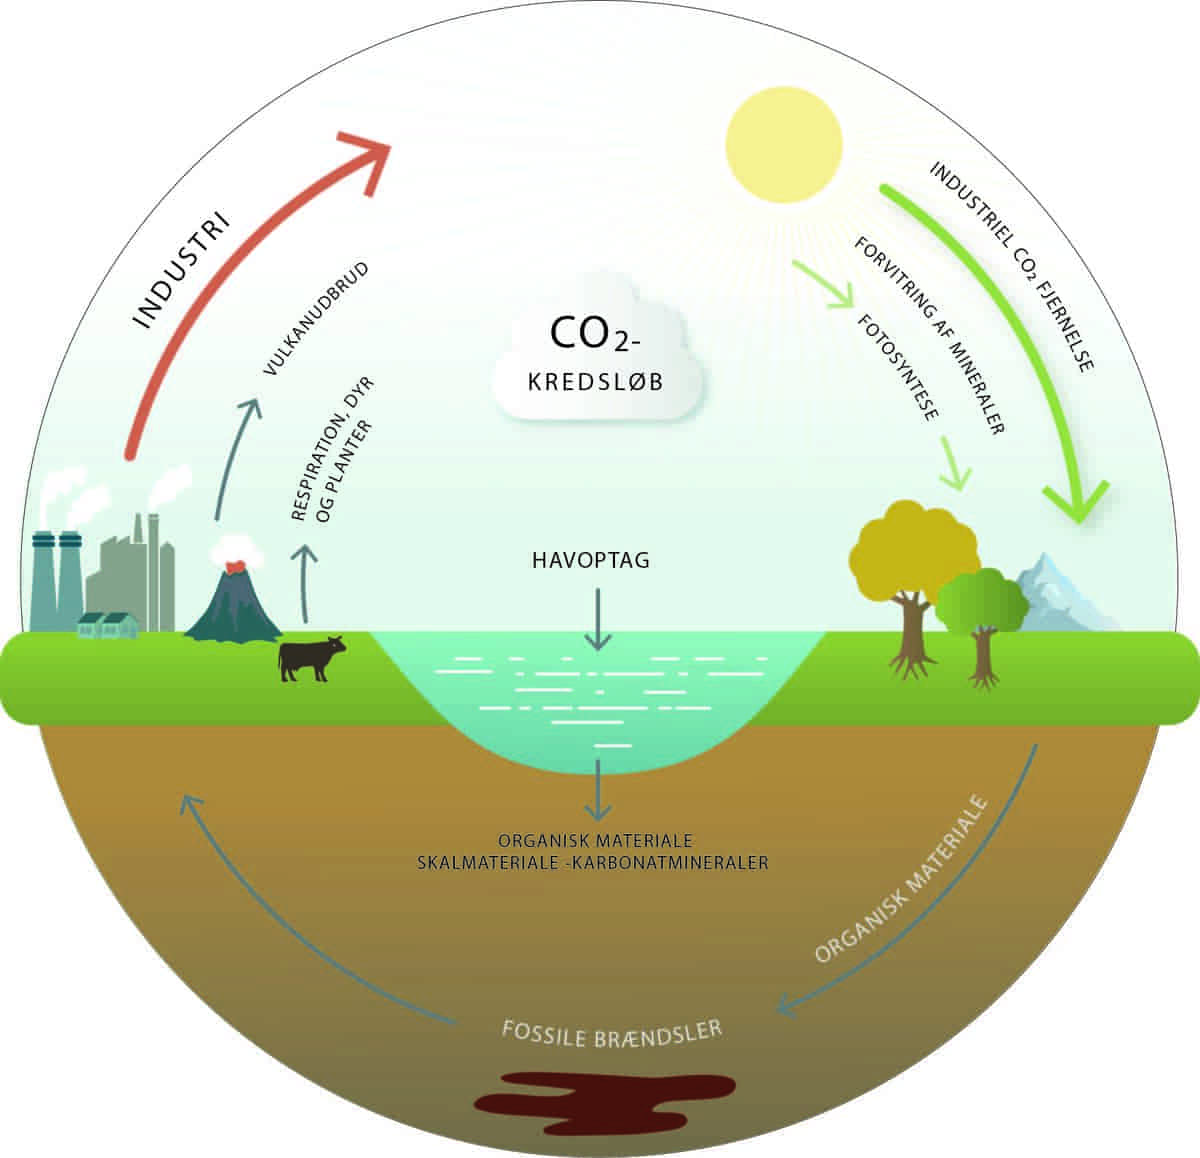 CO2 kredsløbet